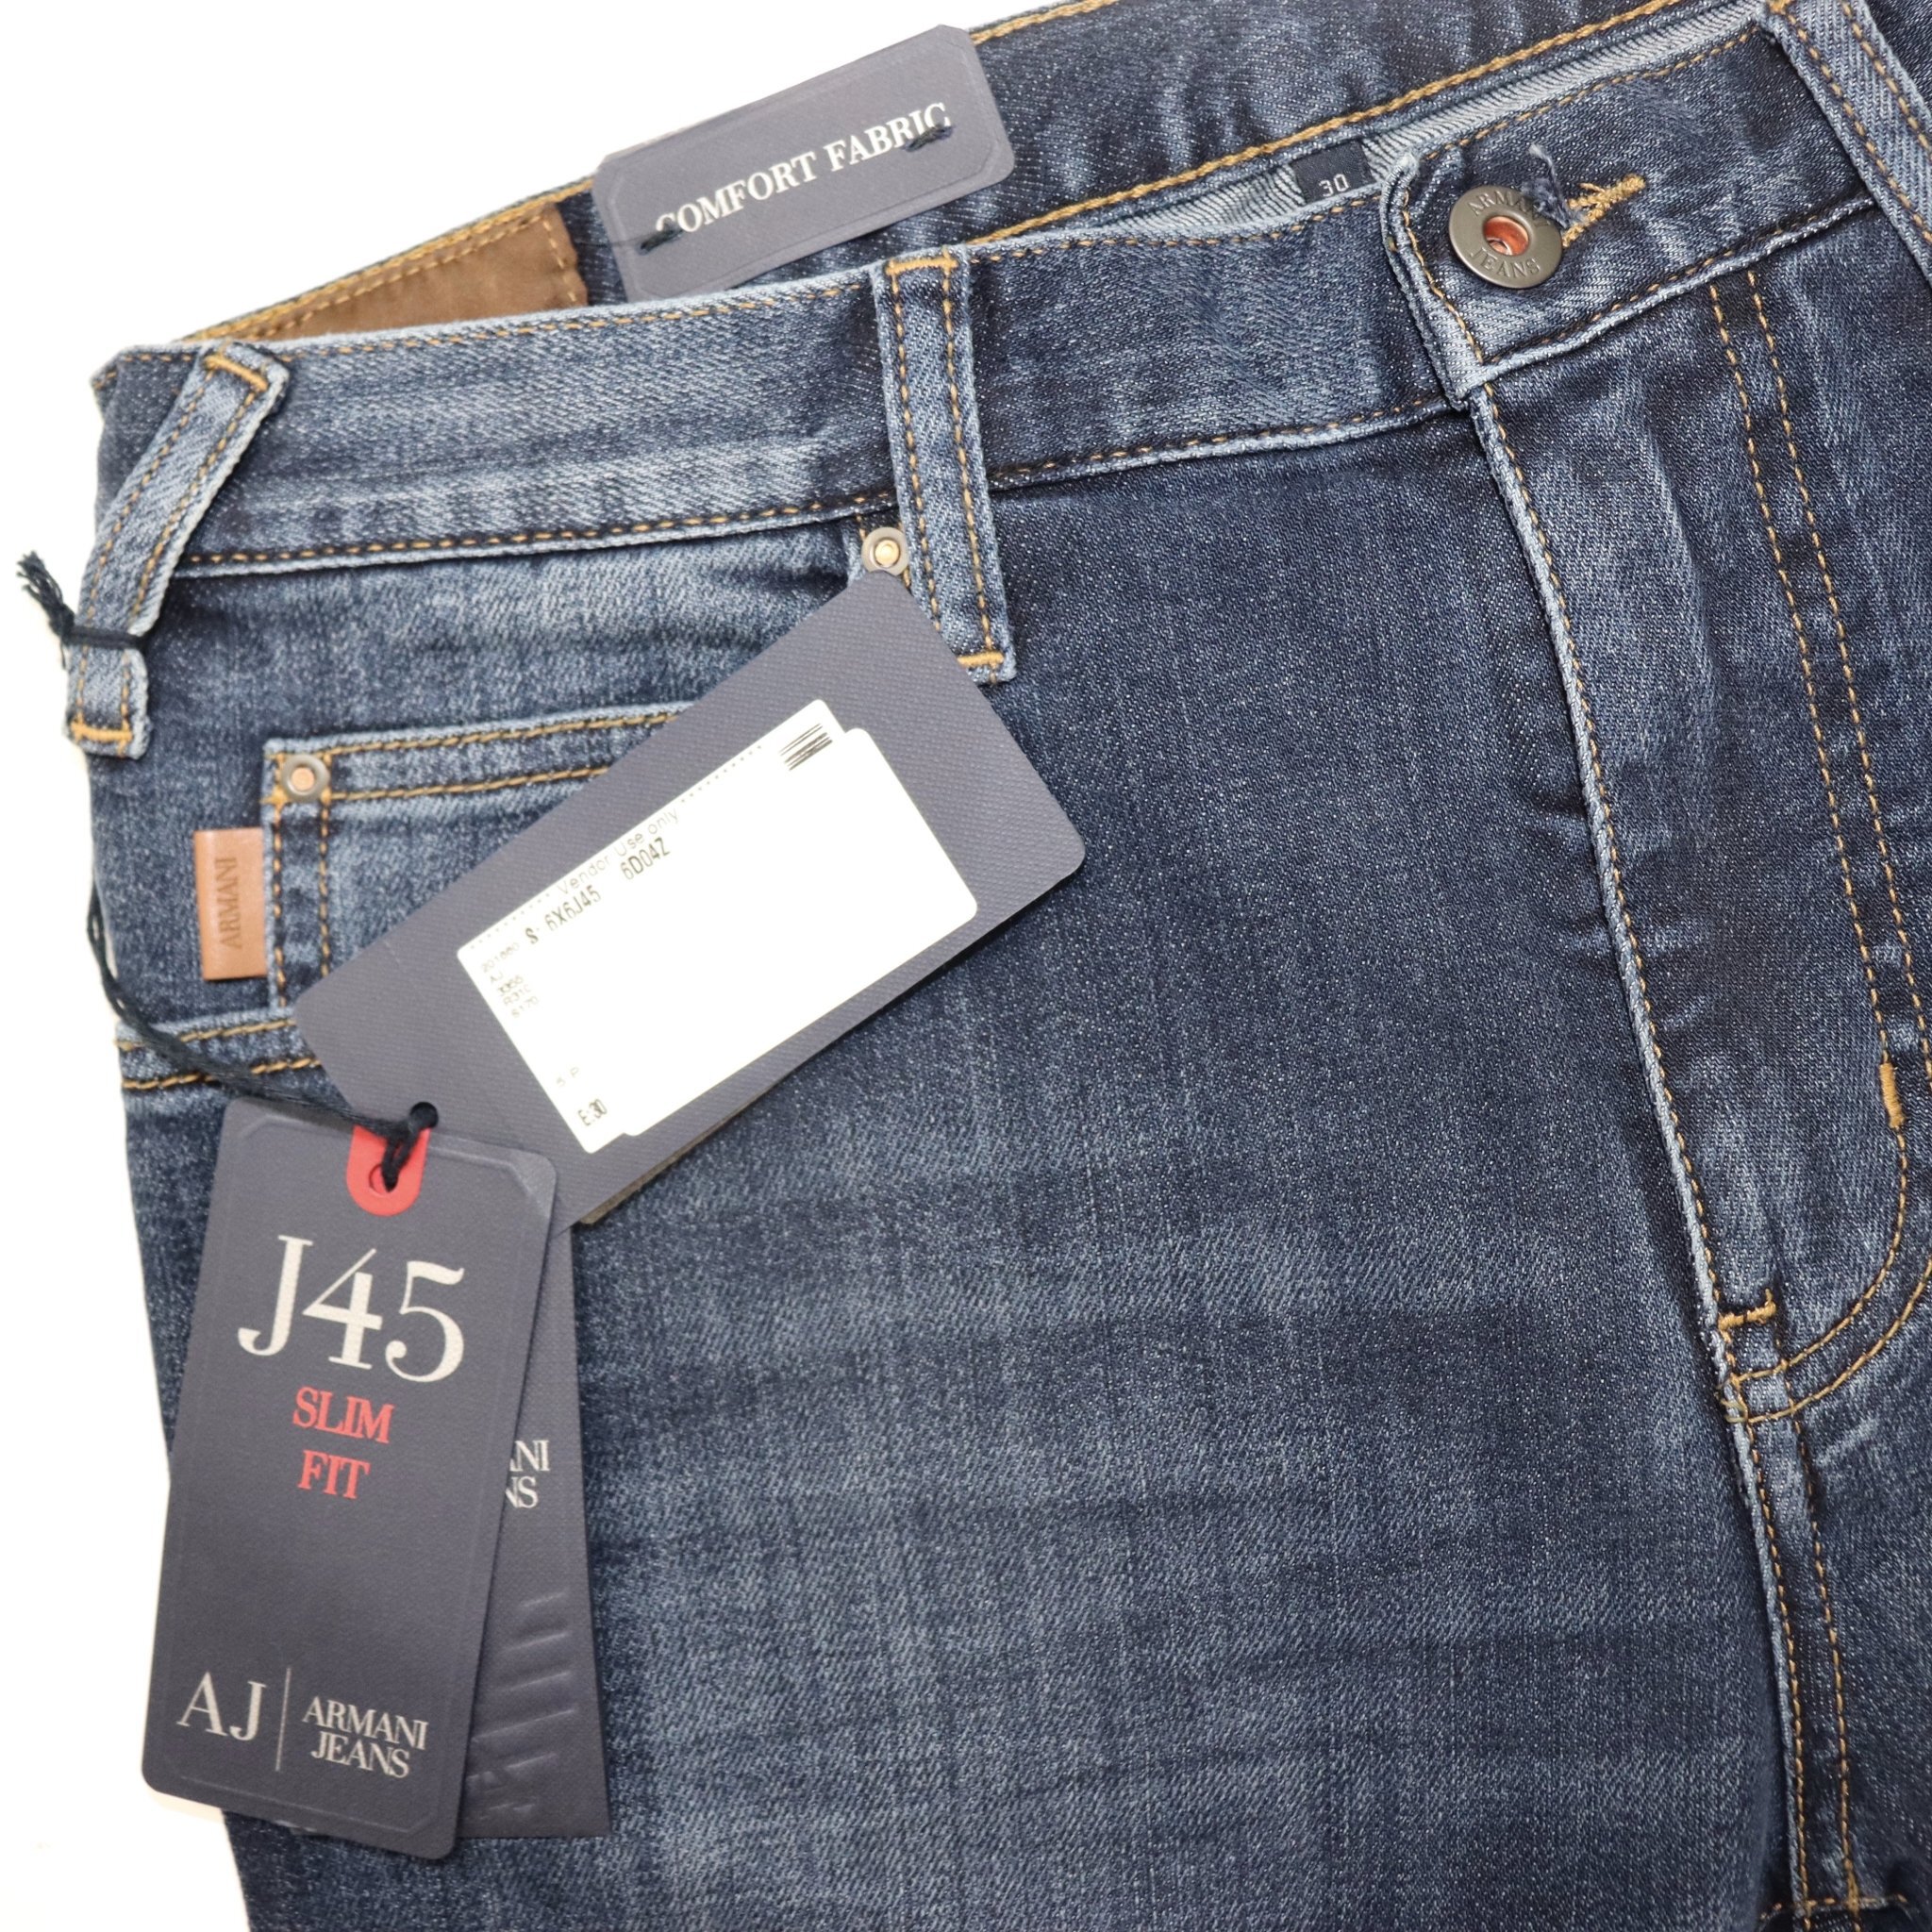 armani jeans j45 slim fit blue